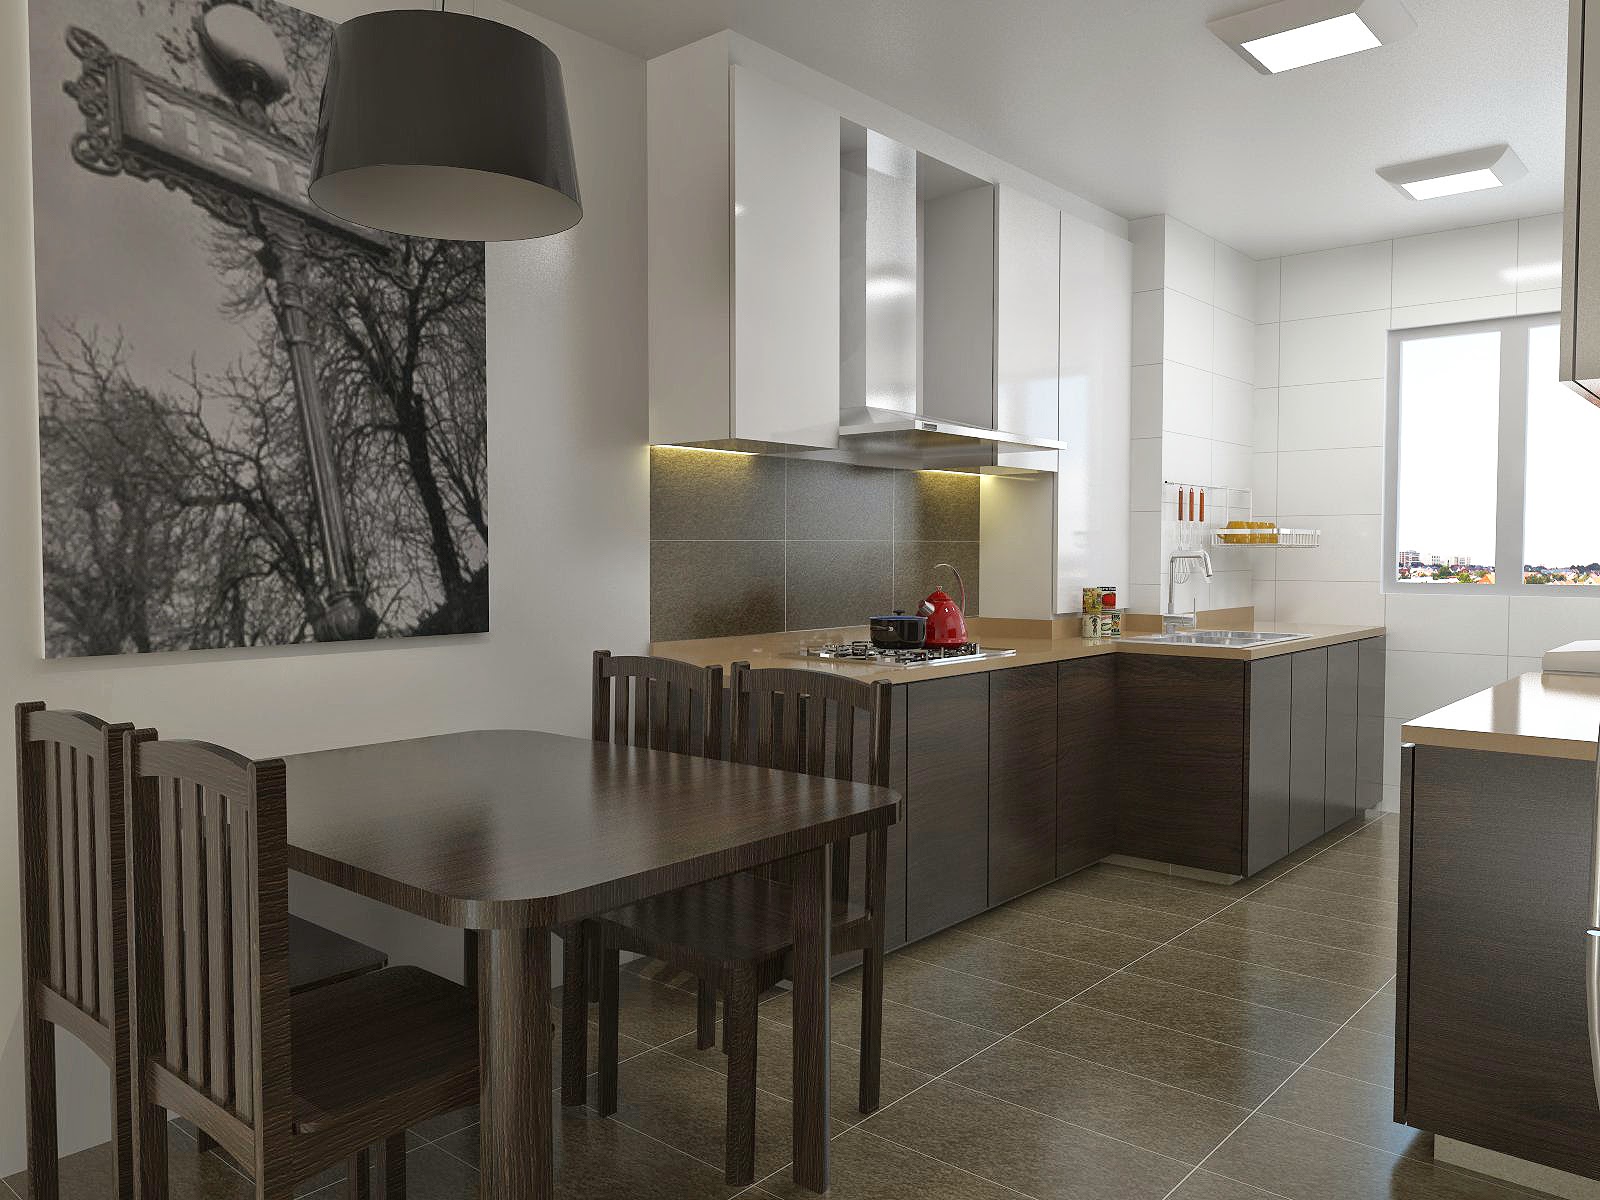 Resale 3 room flat kitchen cabinet design - freelance interior designer.sg